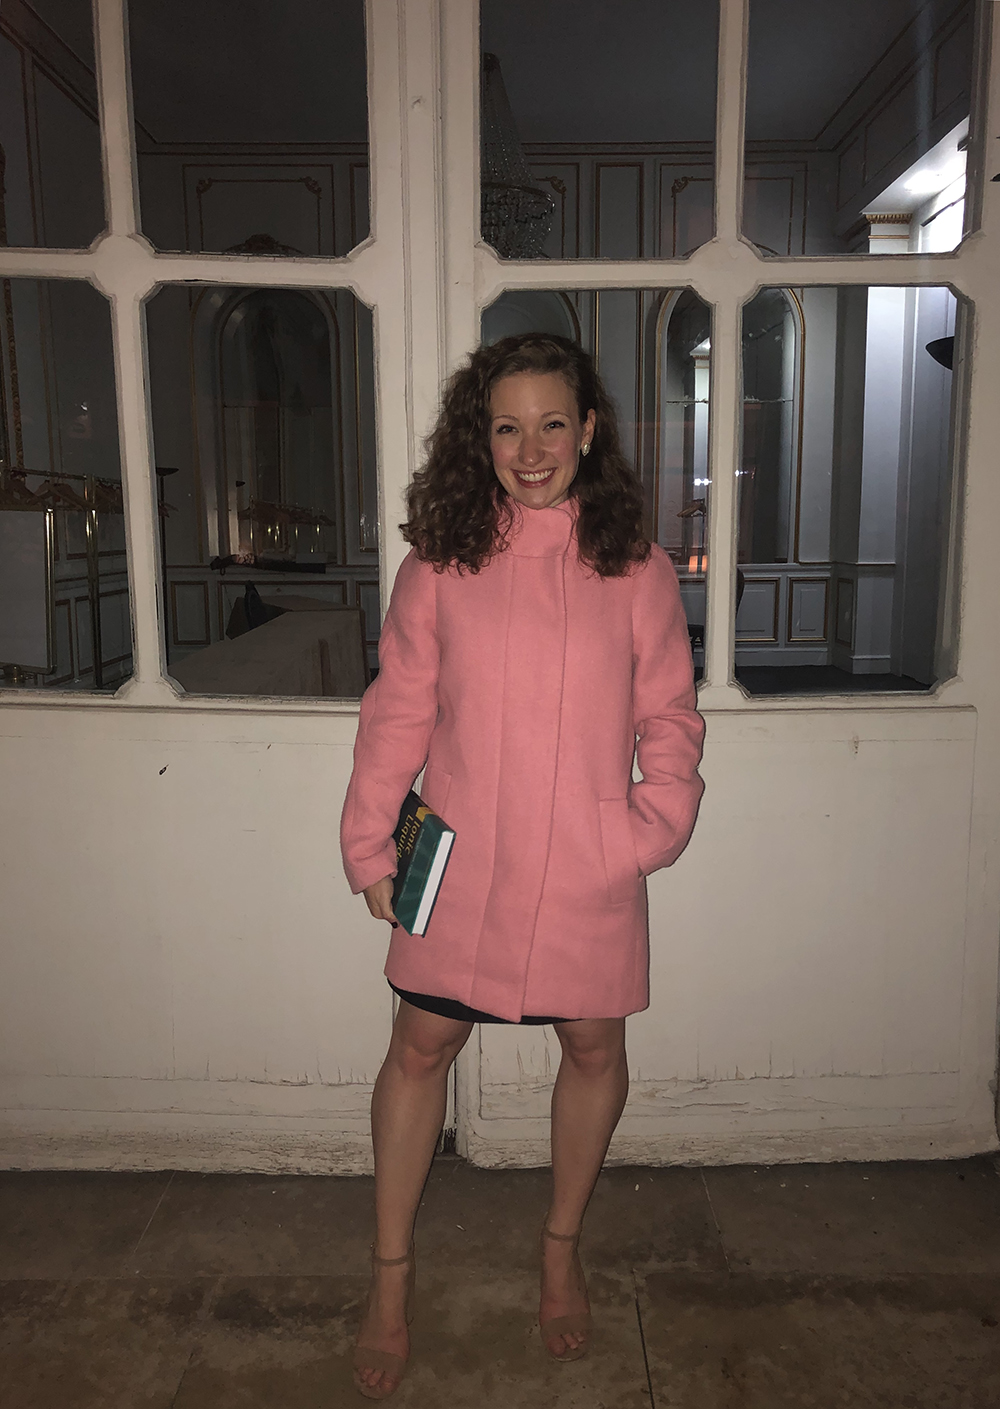 Student in pink coat standing in front of doors